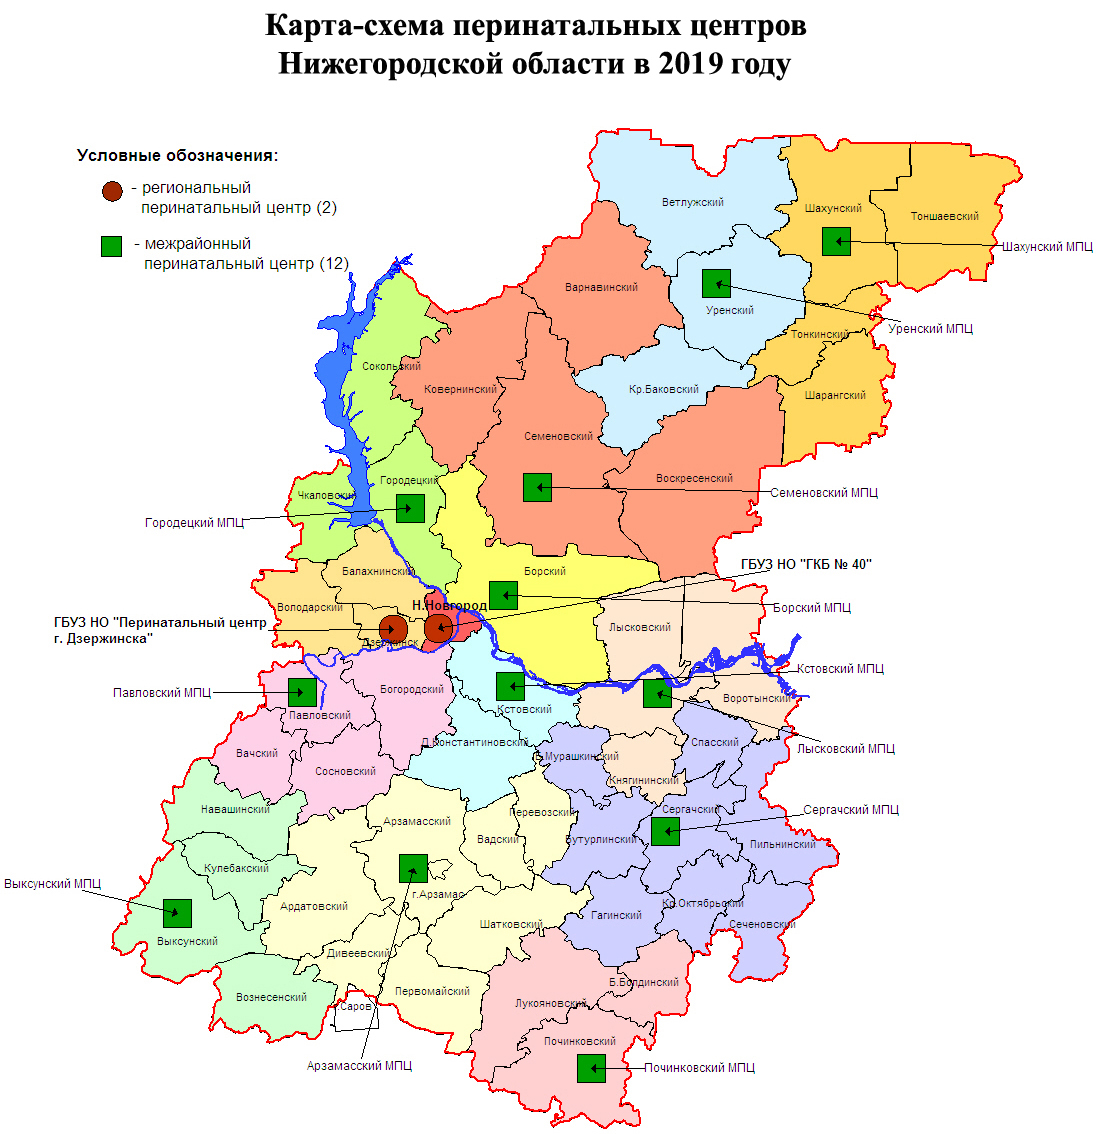 Карта-схема перинатальных центров Нижегородской области в 2019 году.